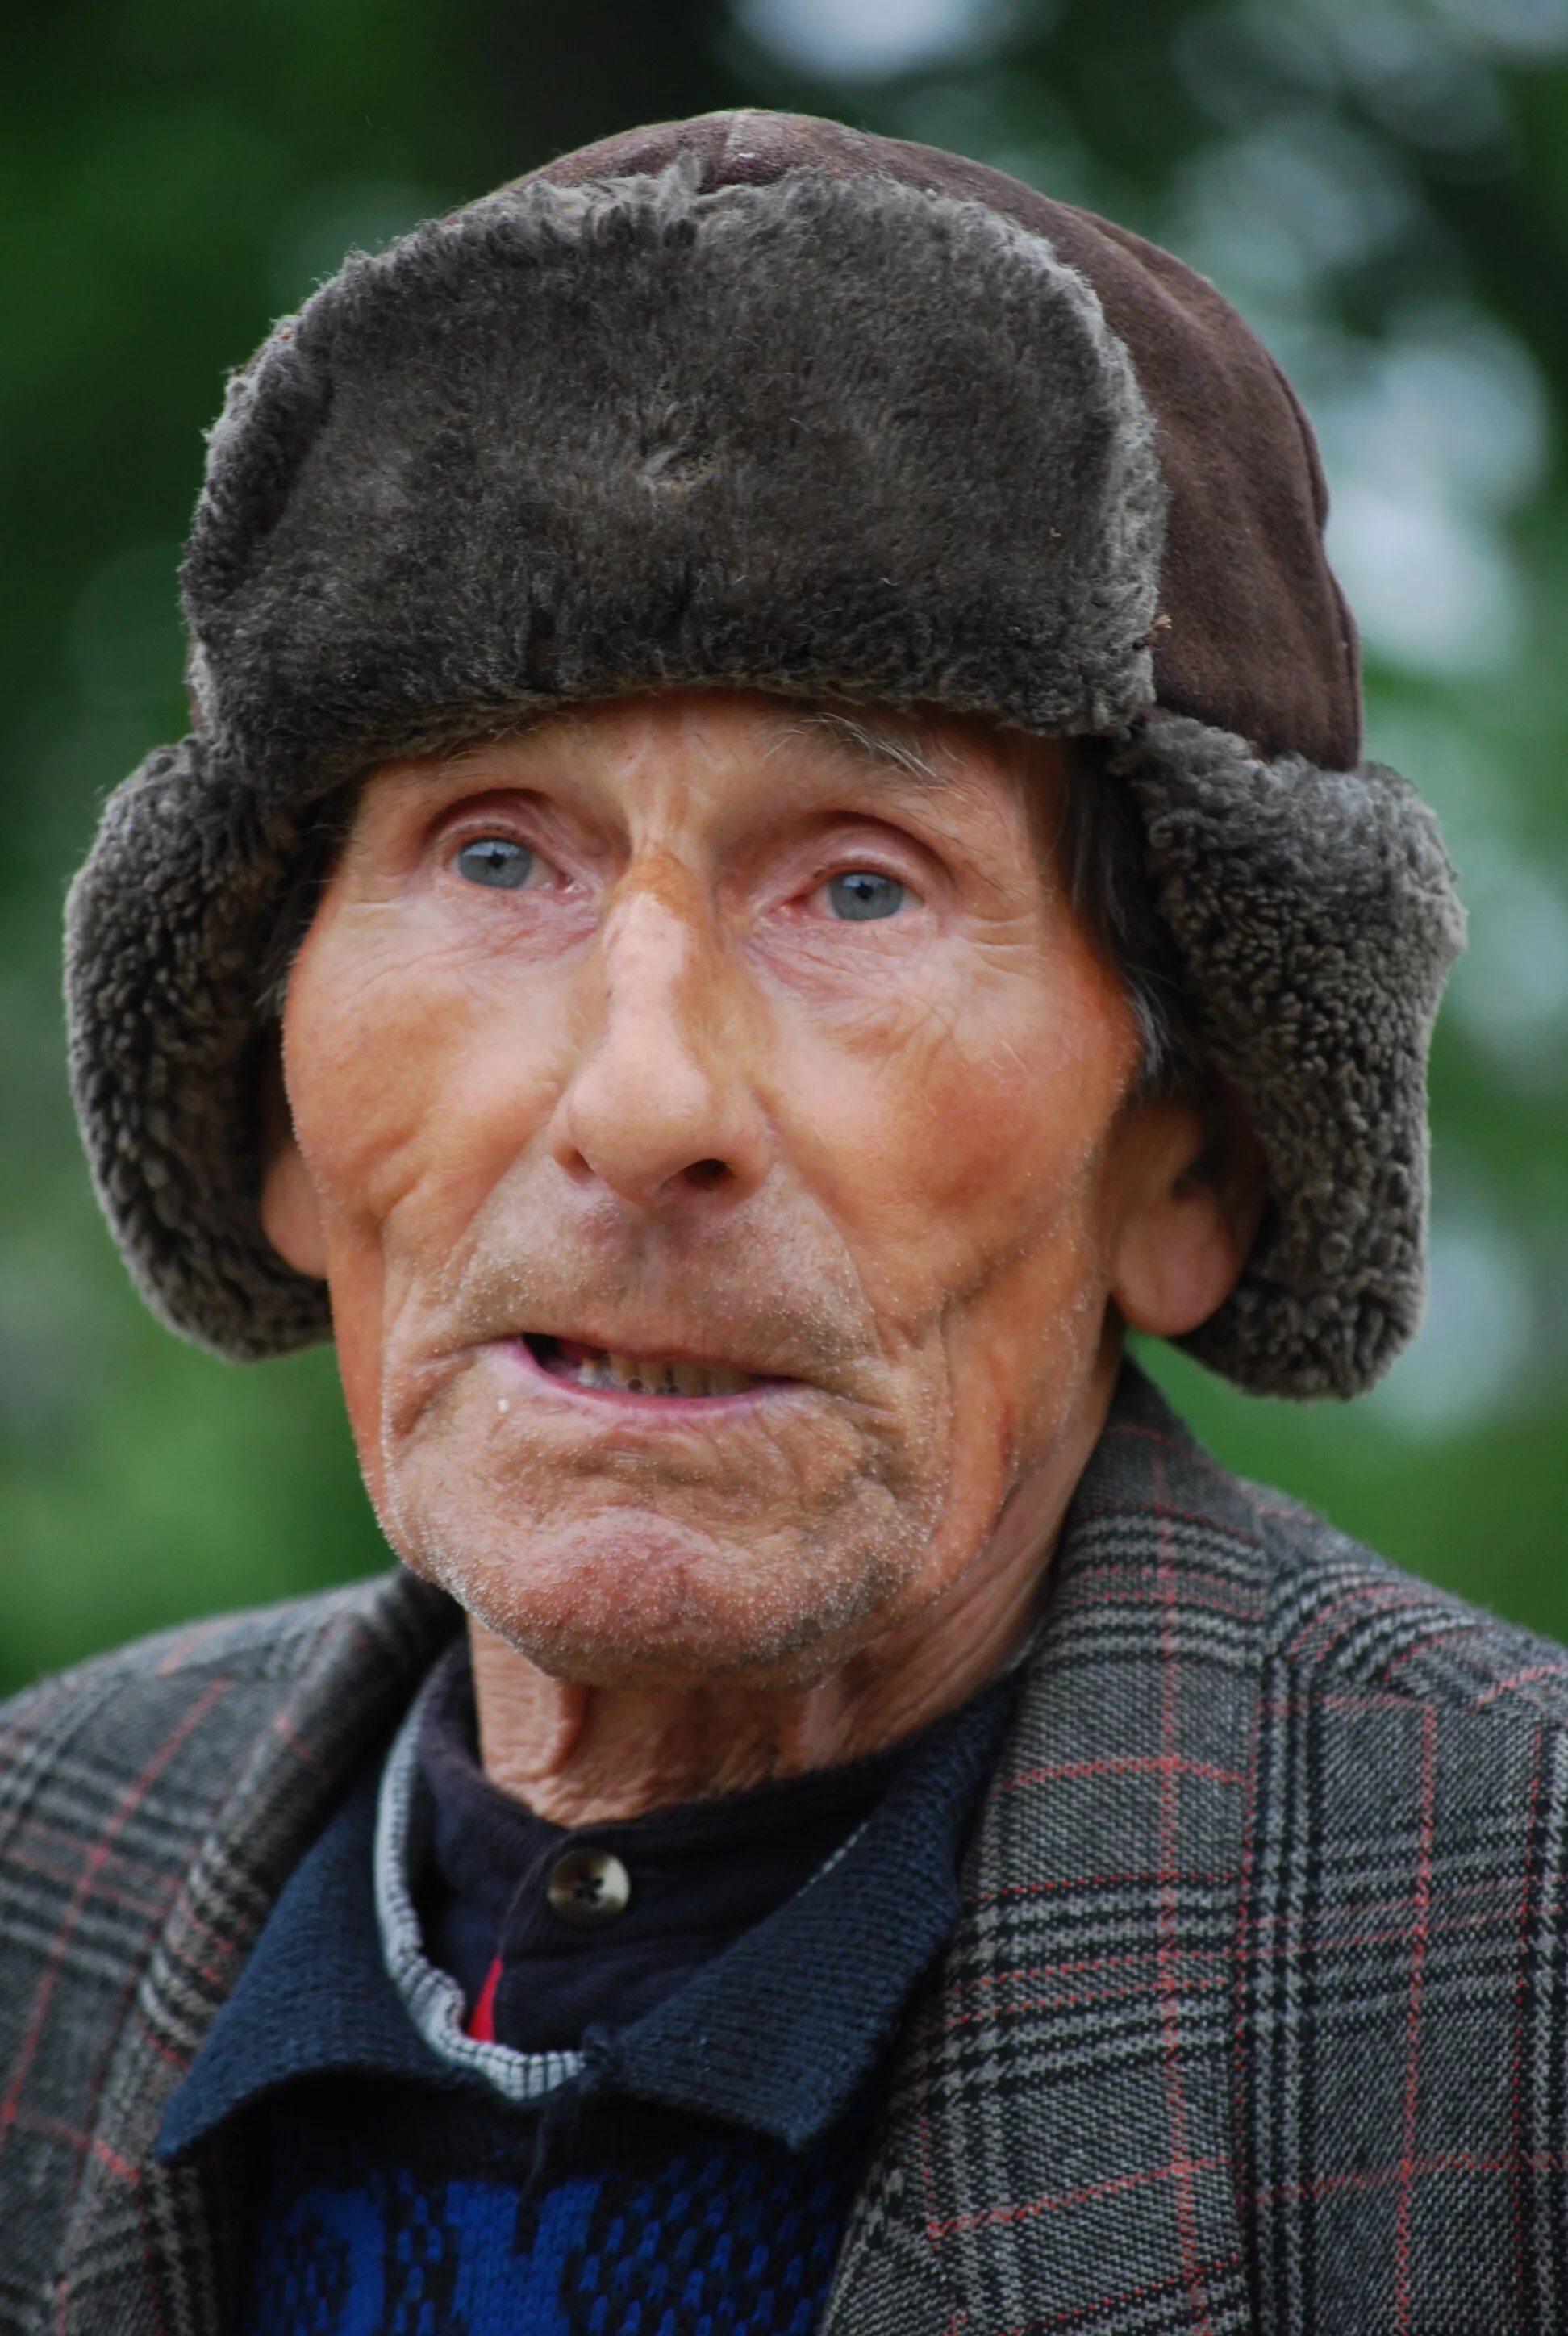 Старик. Старый человек. Фотографии людей. Портрет пожилого мужчины.